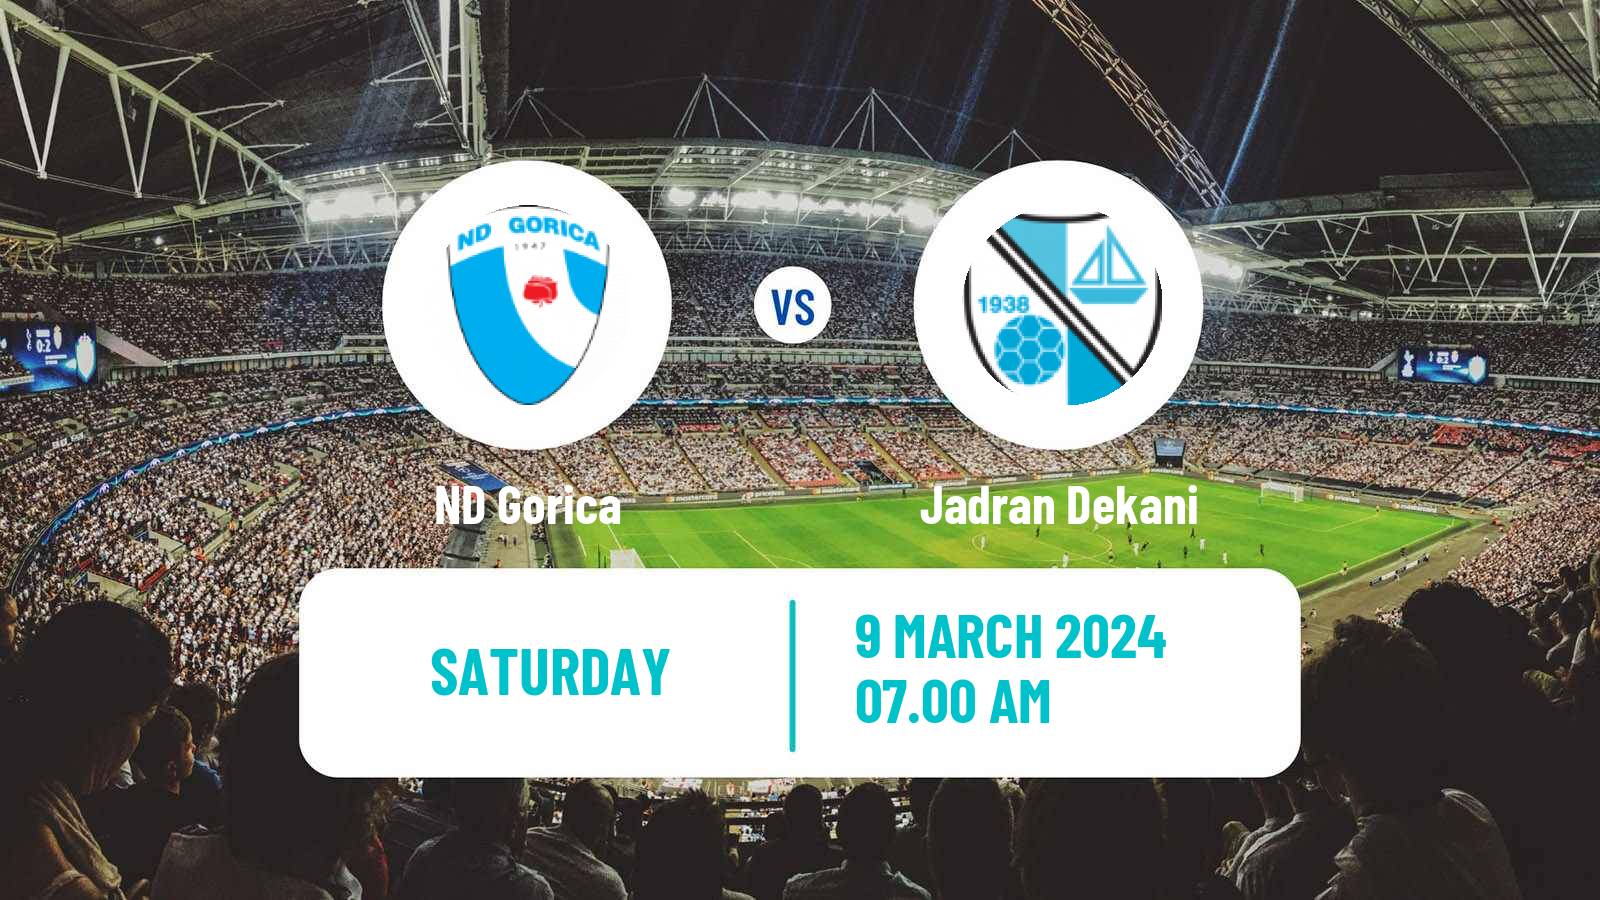 Soccer Slovenian 2 SNL Gorica - Jadran Dekani